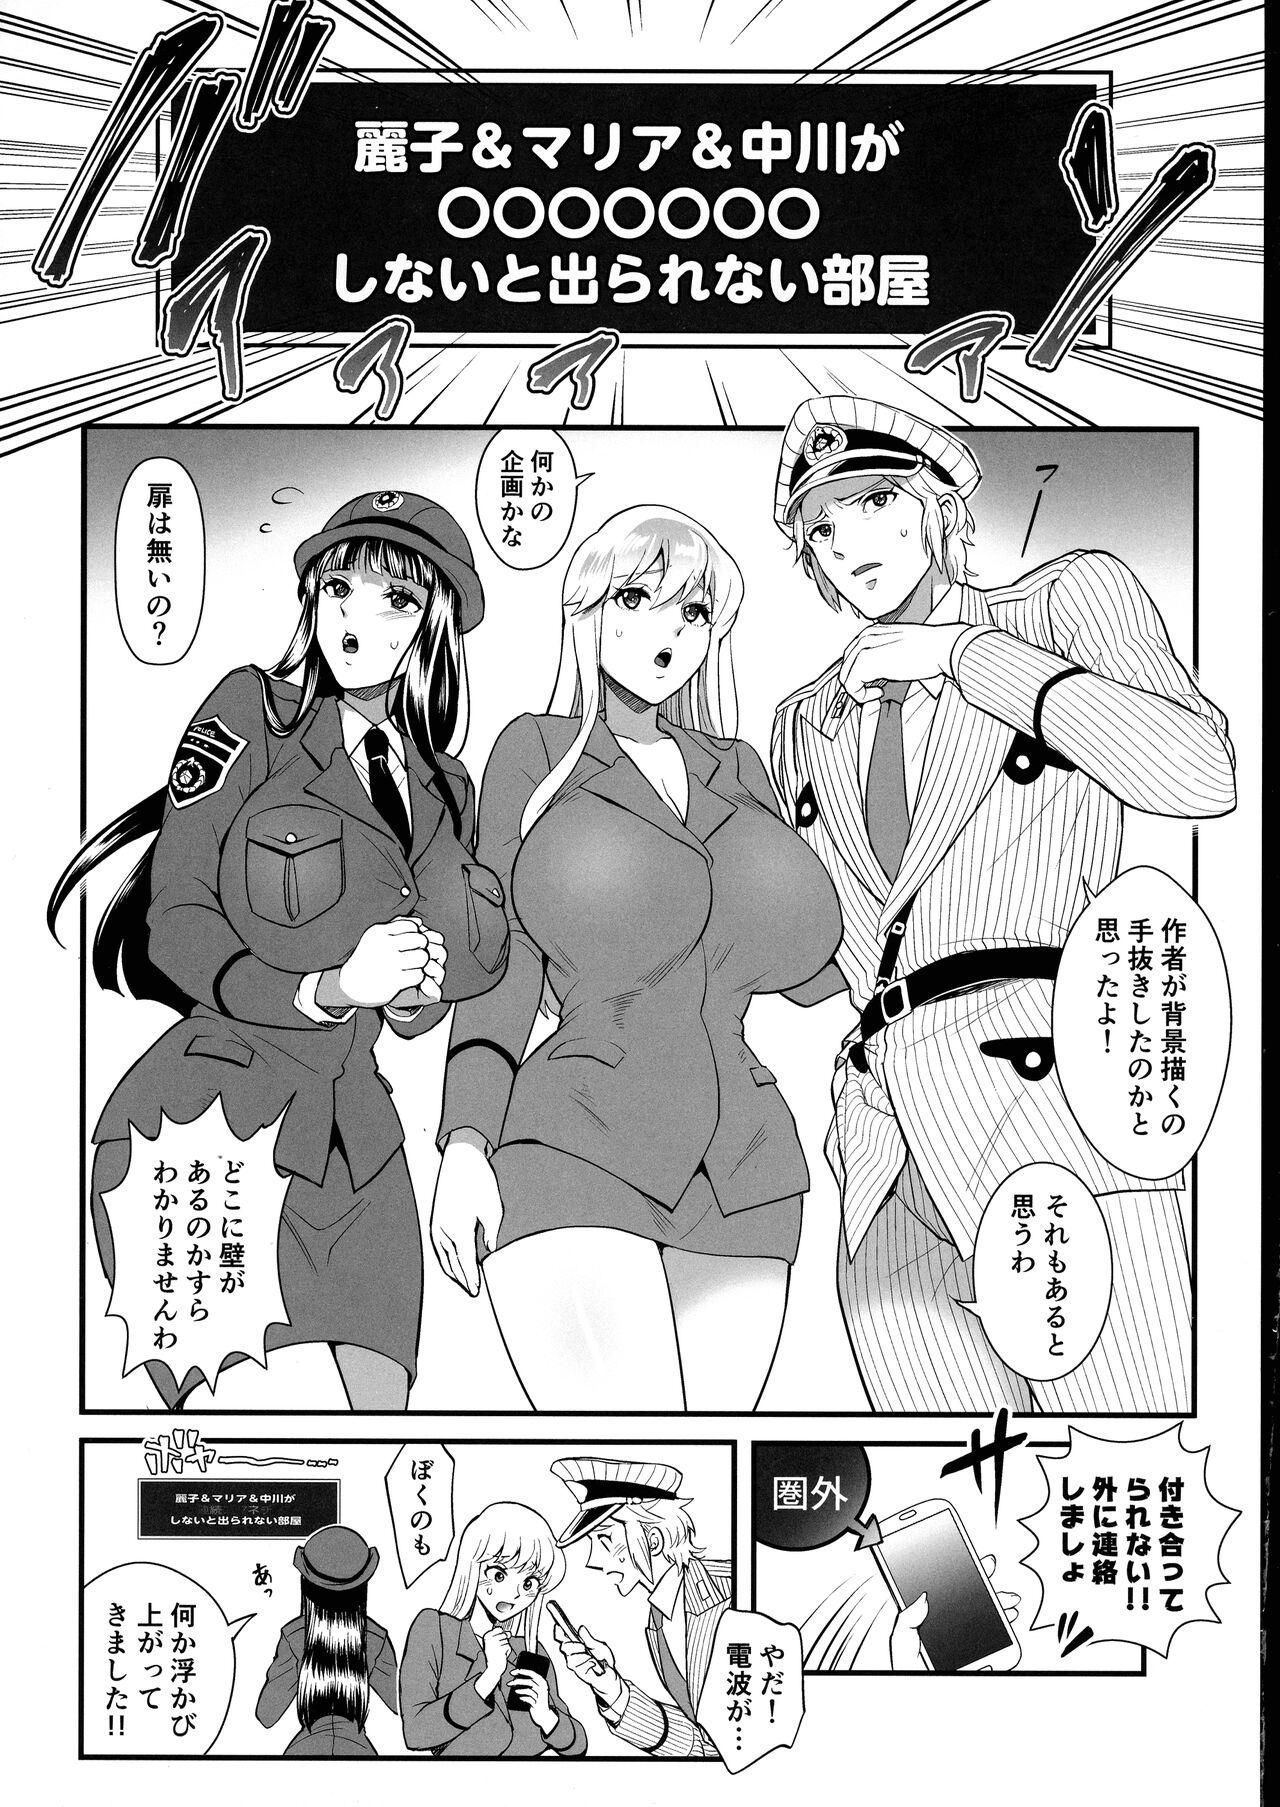 Pussy Play Reiko & Maria & Nakagawa ga Ogeretsuna Koto o Shinai to derarenai Heya no Maki - Kochikame Trans - Page 4